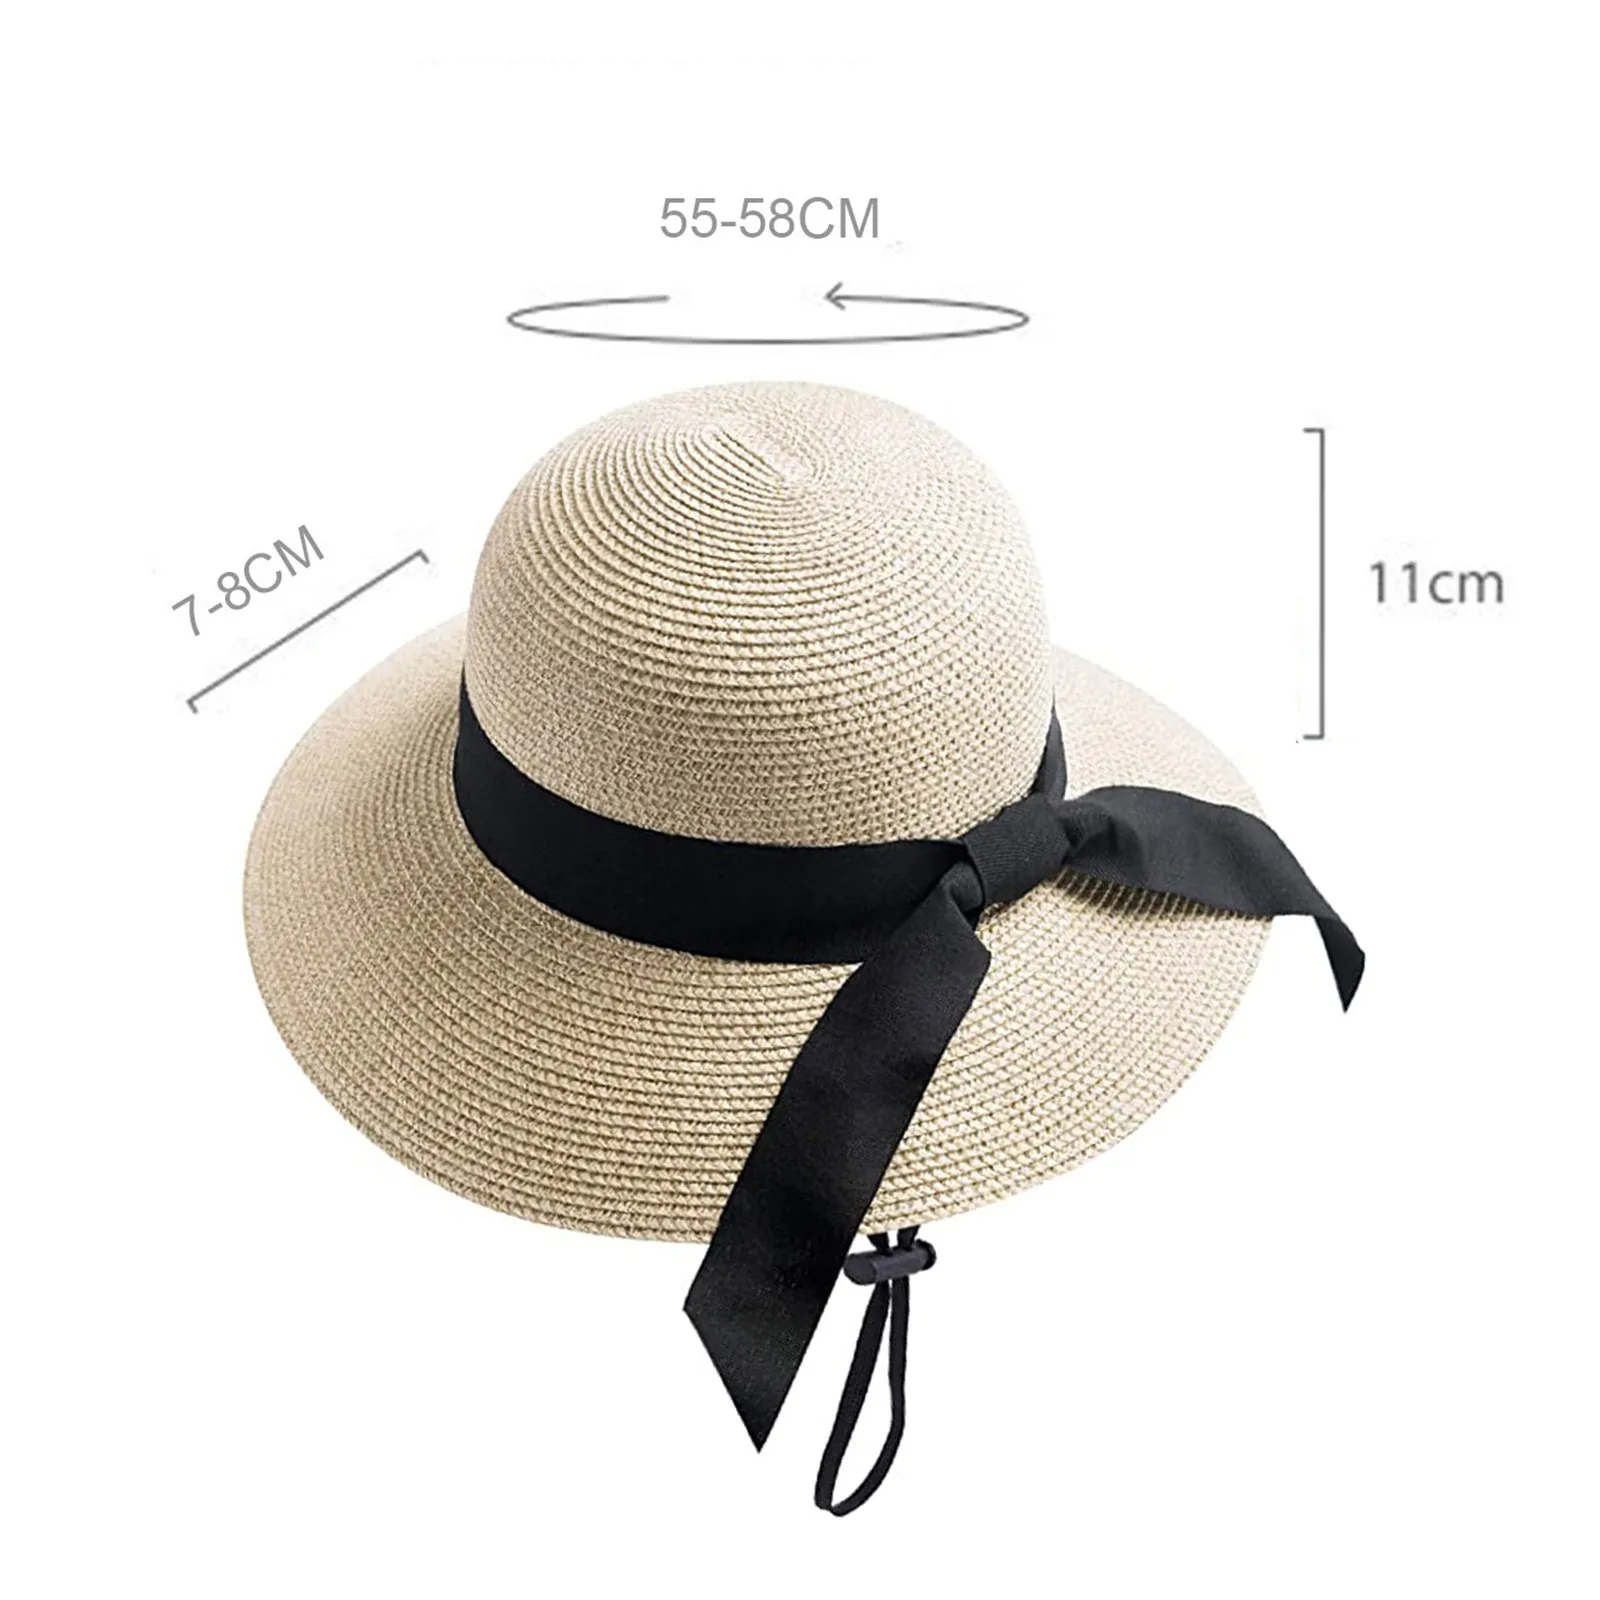 protección Solar de Verano Sombrero de Playa Fedora Plegable Magracy Sombrero de Paja para niños 